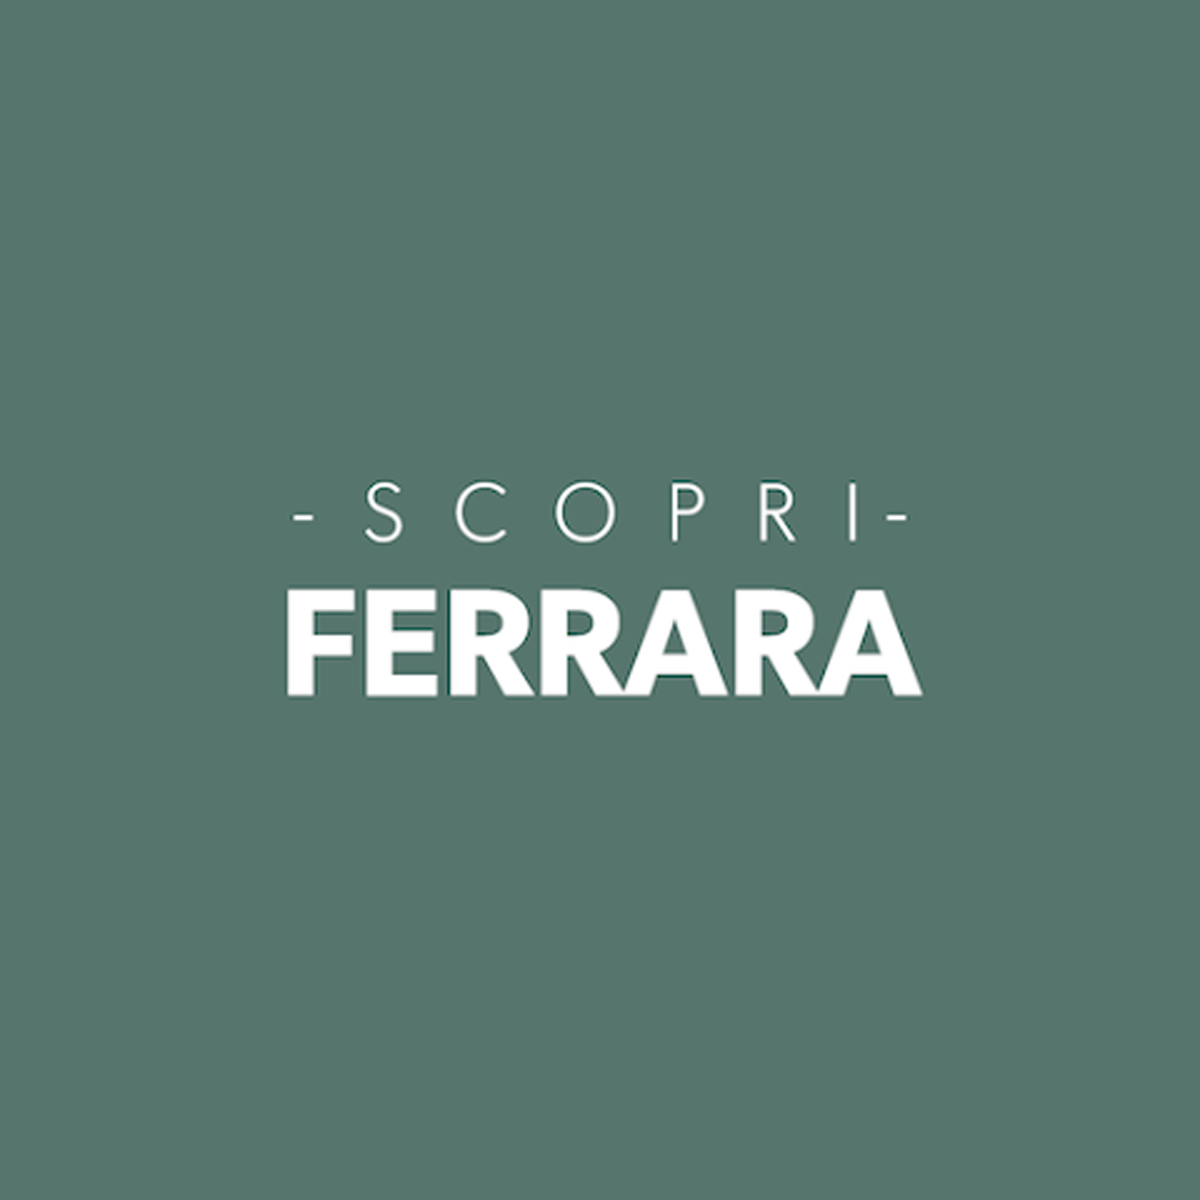 Scopri Ferrara App